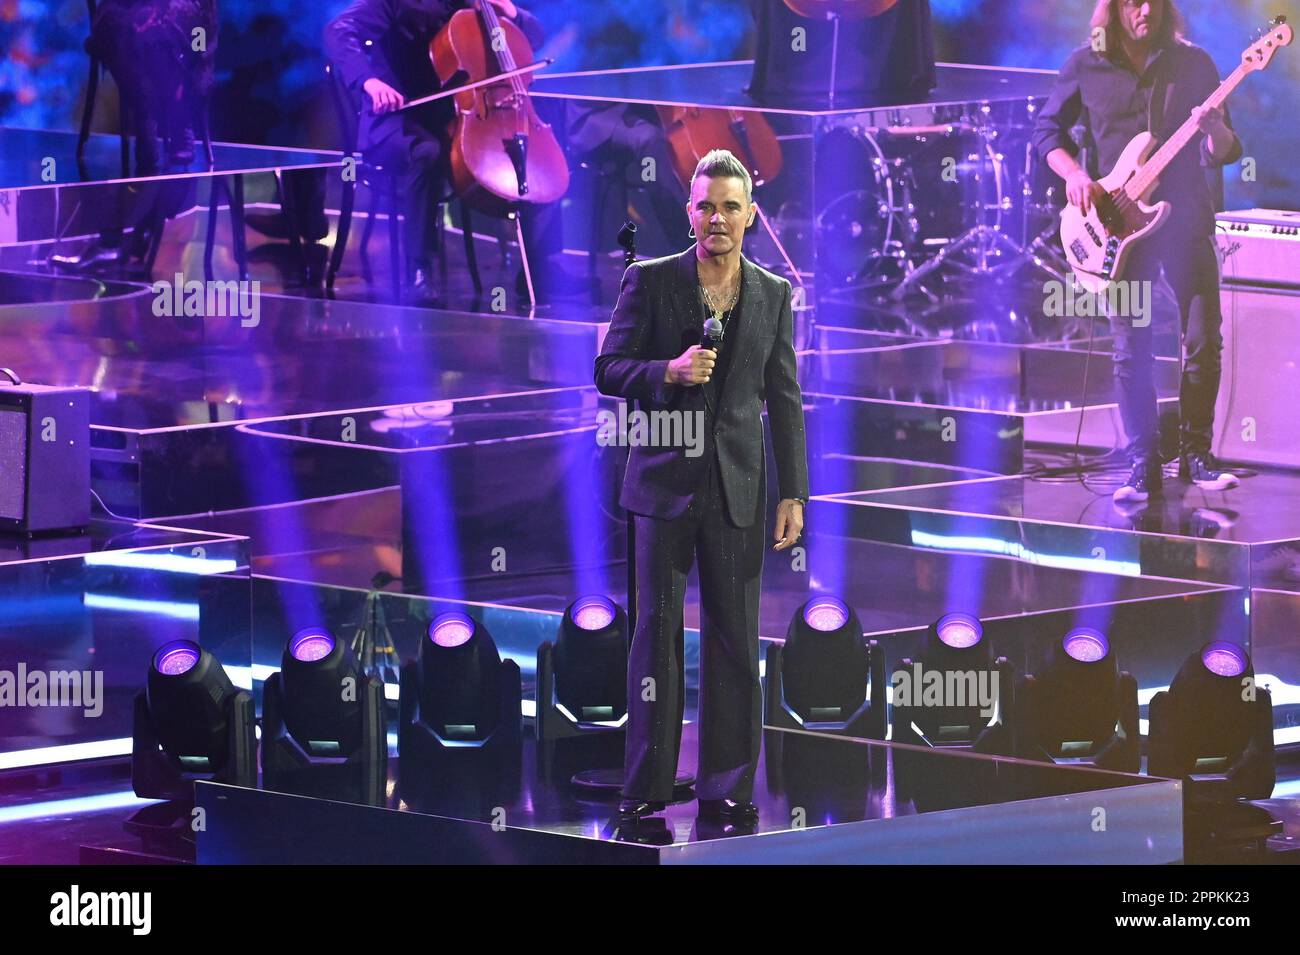 Robbie Williams,bet that..? from the exhibition halls,Friedrichshafen,19.11.2022 Stock Photo